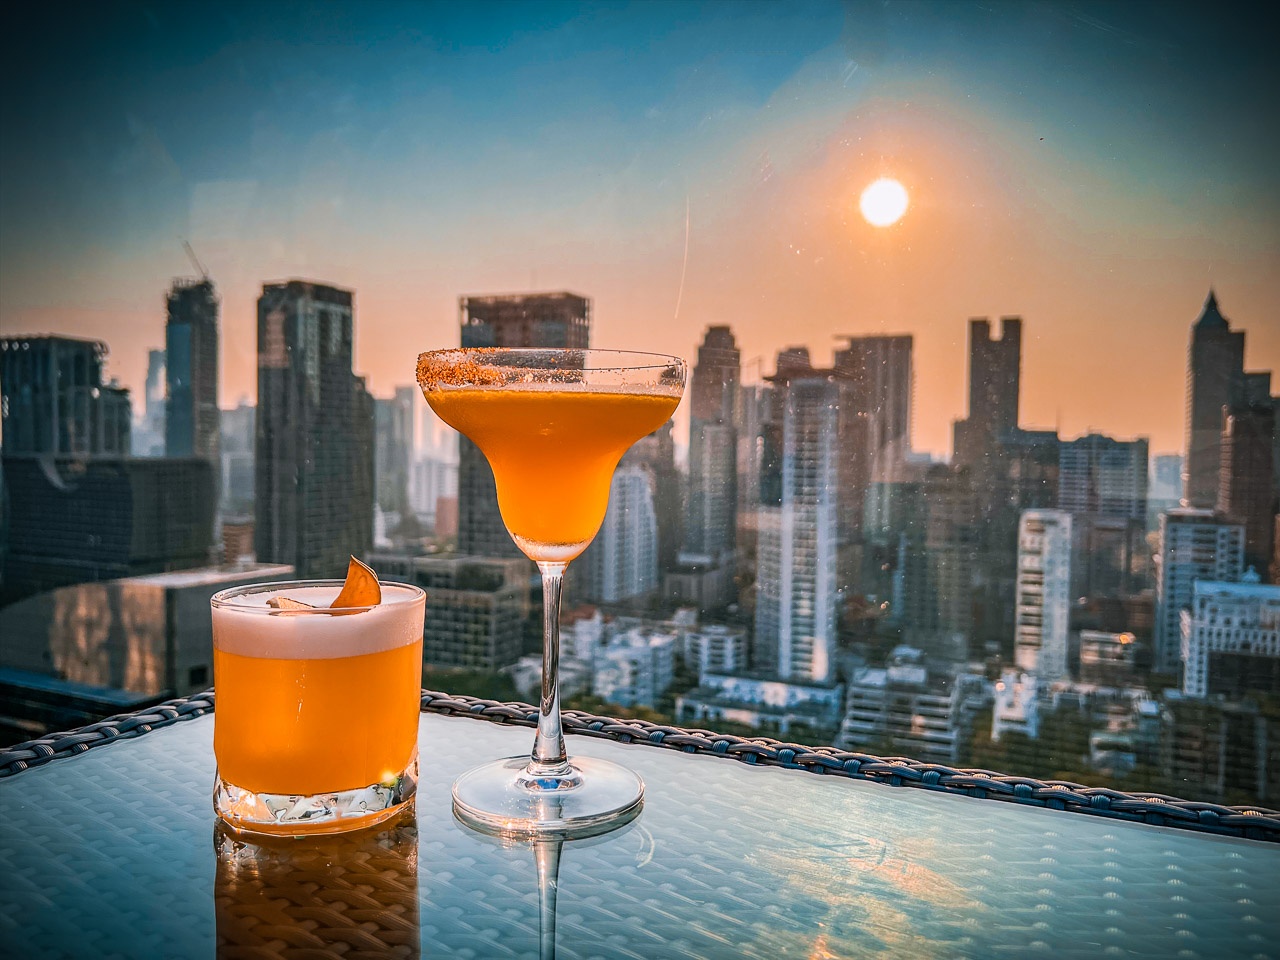 曼谷景點,曼谷高空酒吧,曼谷英迪格飯店 CHAR Rooftop Ba,曼谷英迪格飯店酒吧,泰國旅遊,泰國酒吧,泰國高空酒吧